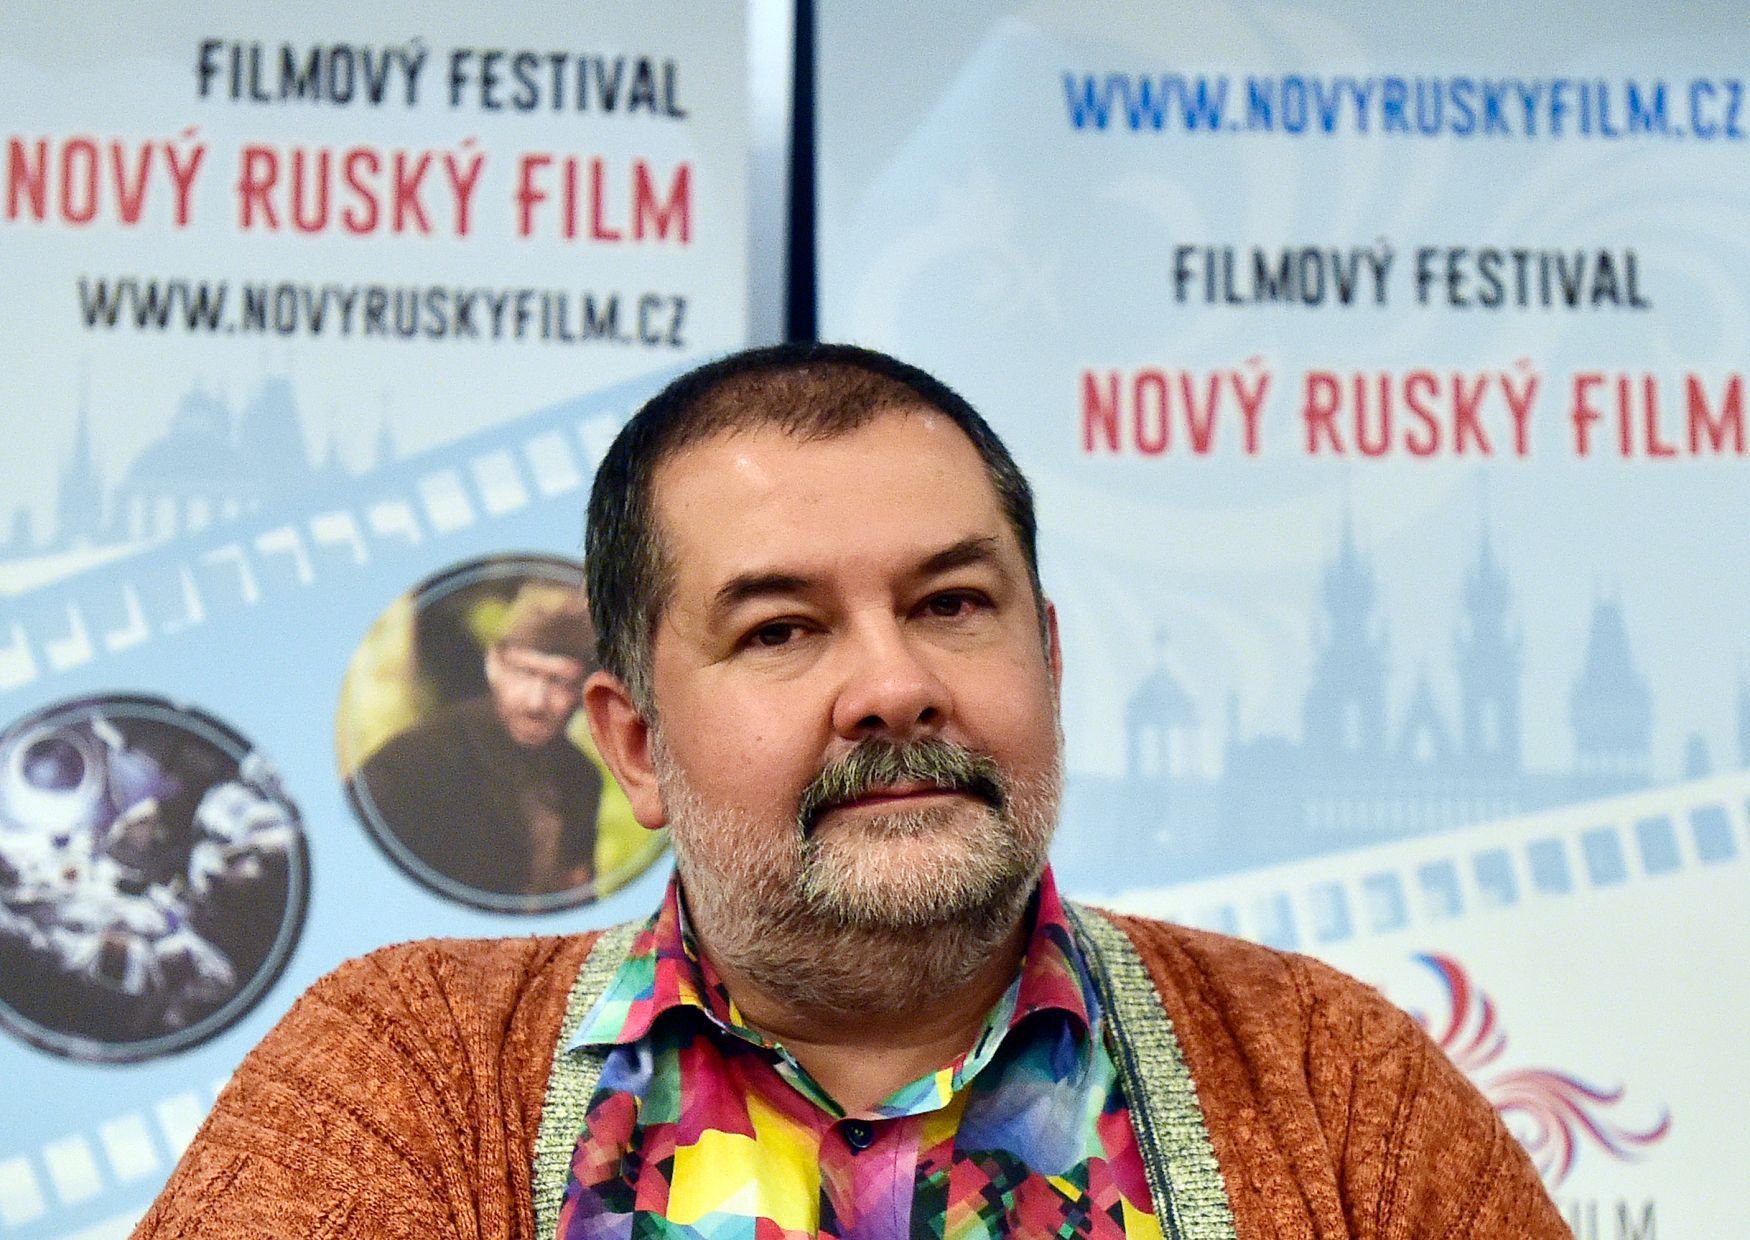 Sergej Lukjaněnko